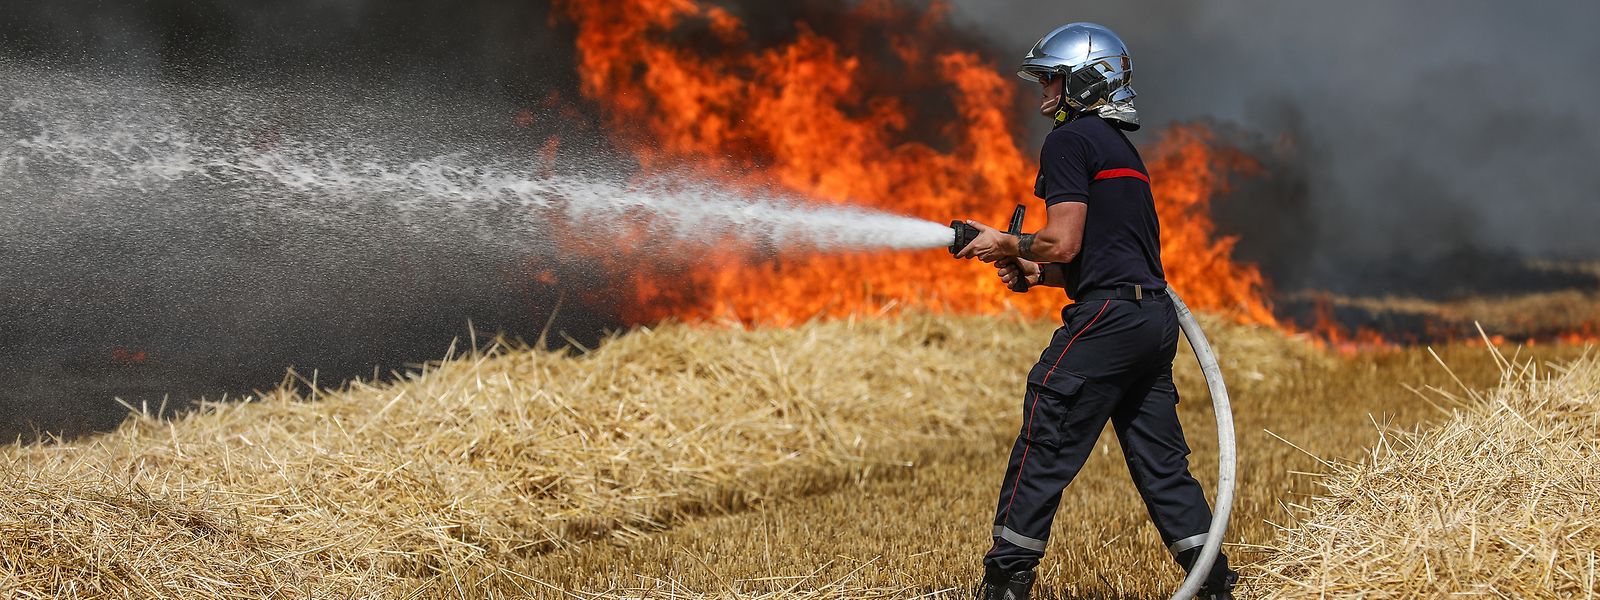 Rien qu'en juillet 2019, les pompiers luxembourgeois sont intervenus sur 67 feux de végétation.